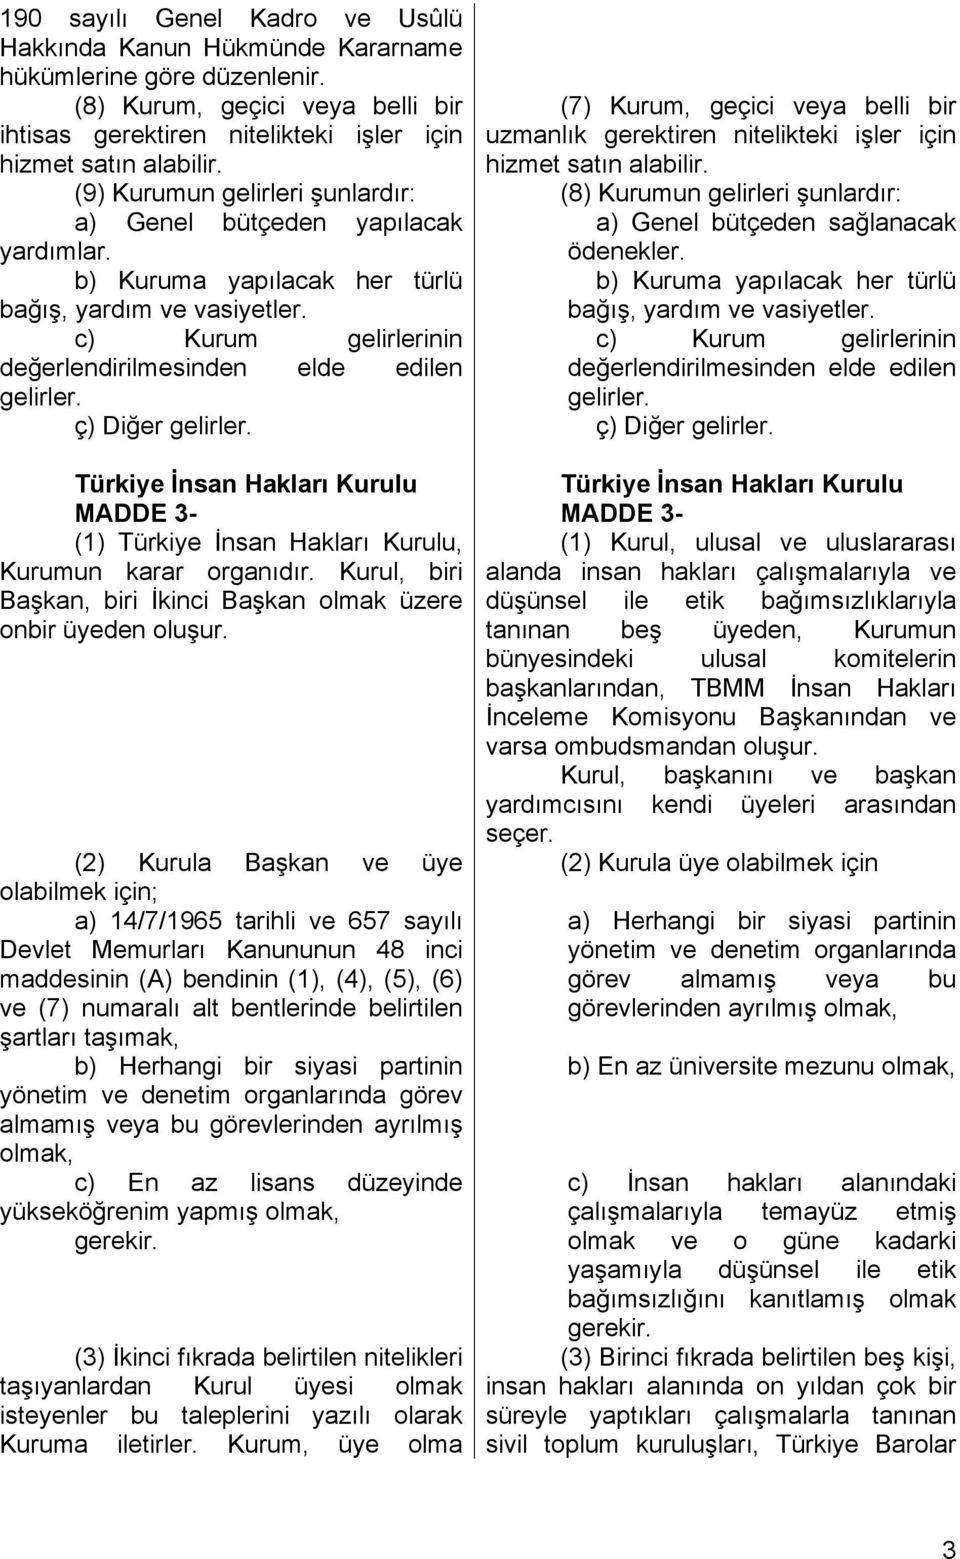 ç) Diğer gelirler. Türkiye İnsan Hakları Kurulu MADDE 3- (1) Türkiye İnsan Hakları Kurulu, Kurumun karar organıdır. Kurul, biri Başkan, biri İkinci Başkan olmak üzere onbir üyeden oluşur.